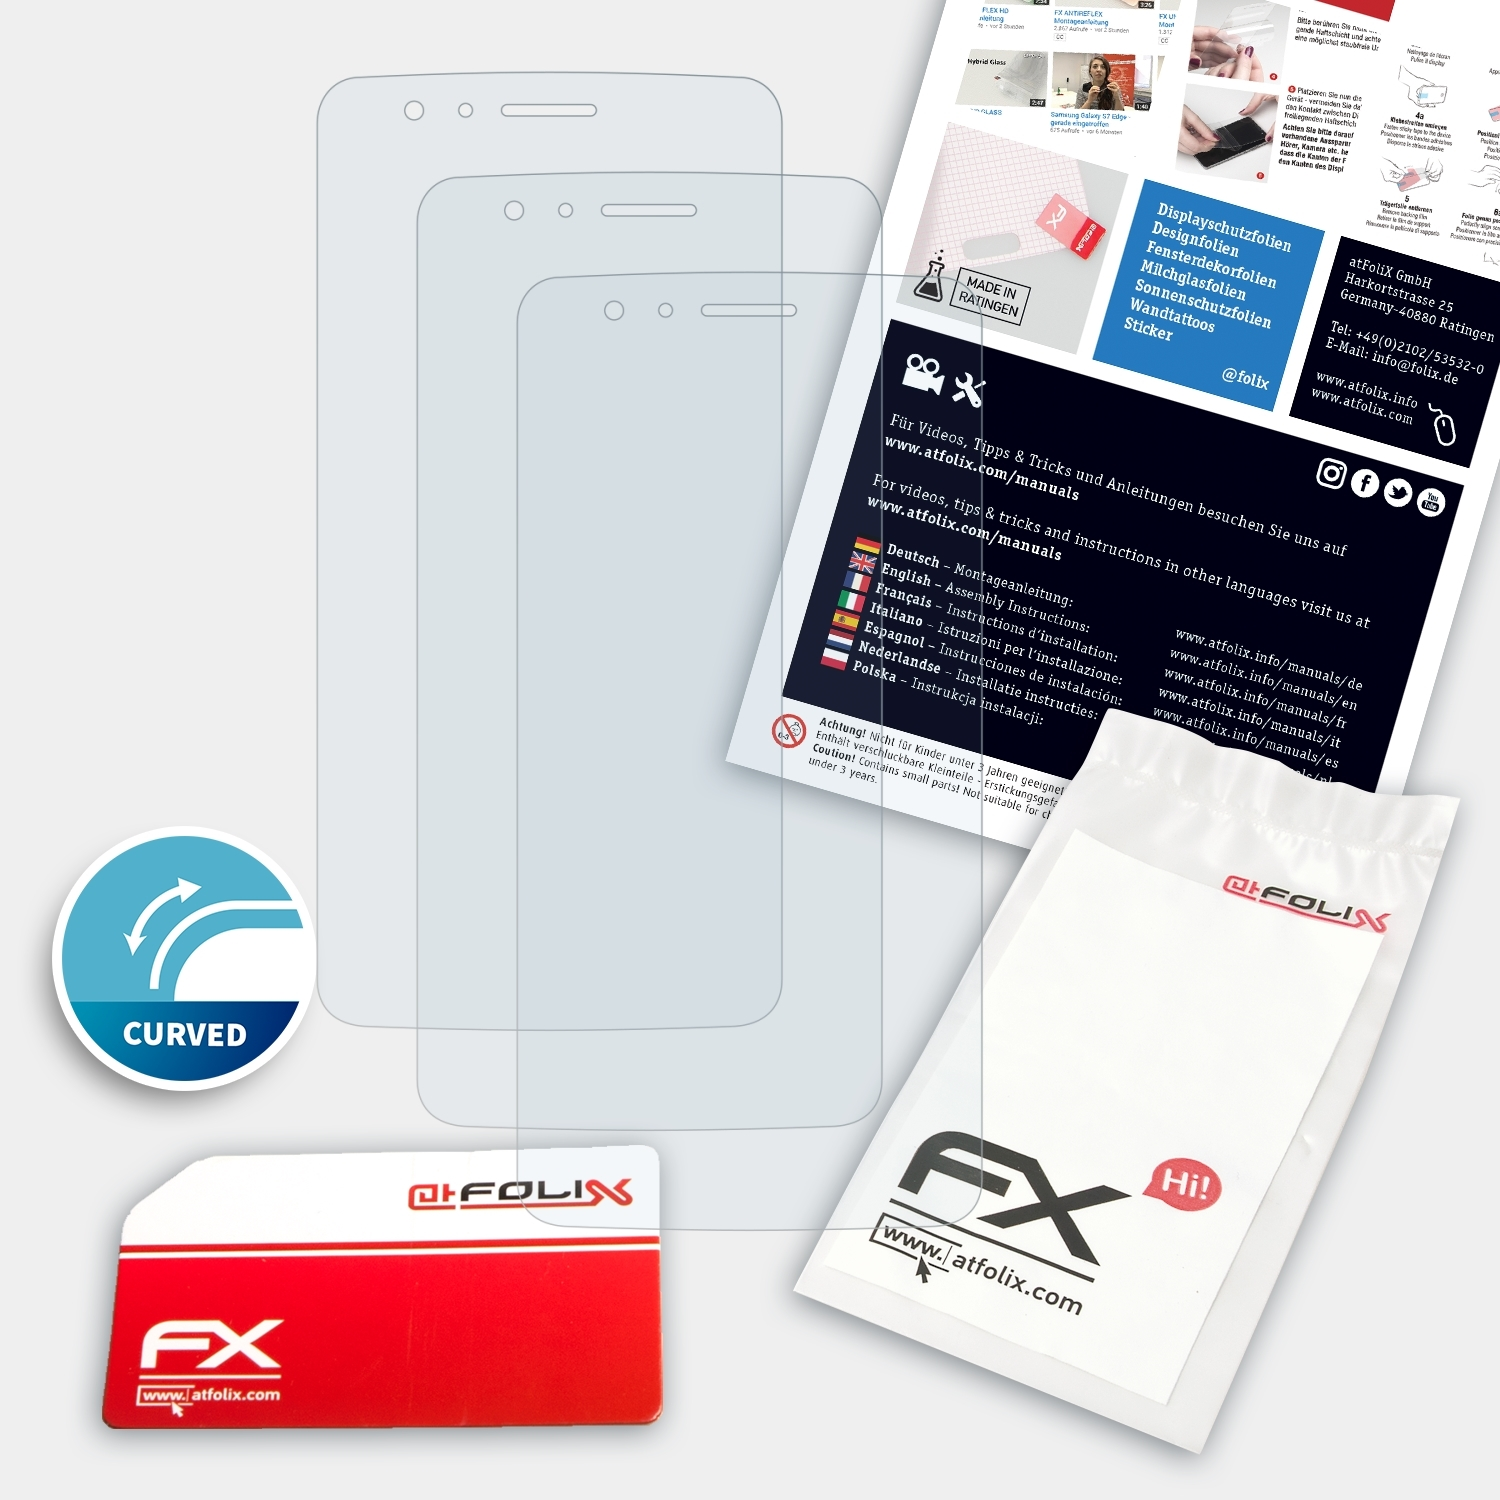 ATFOLIX 3x Displayschutz(für FX-ActiFleX K8 LG (LGX240))